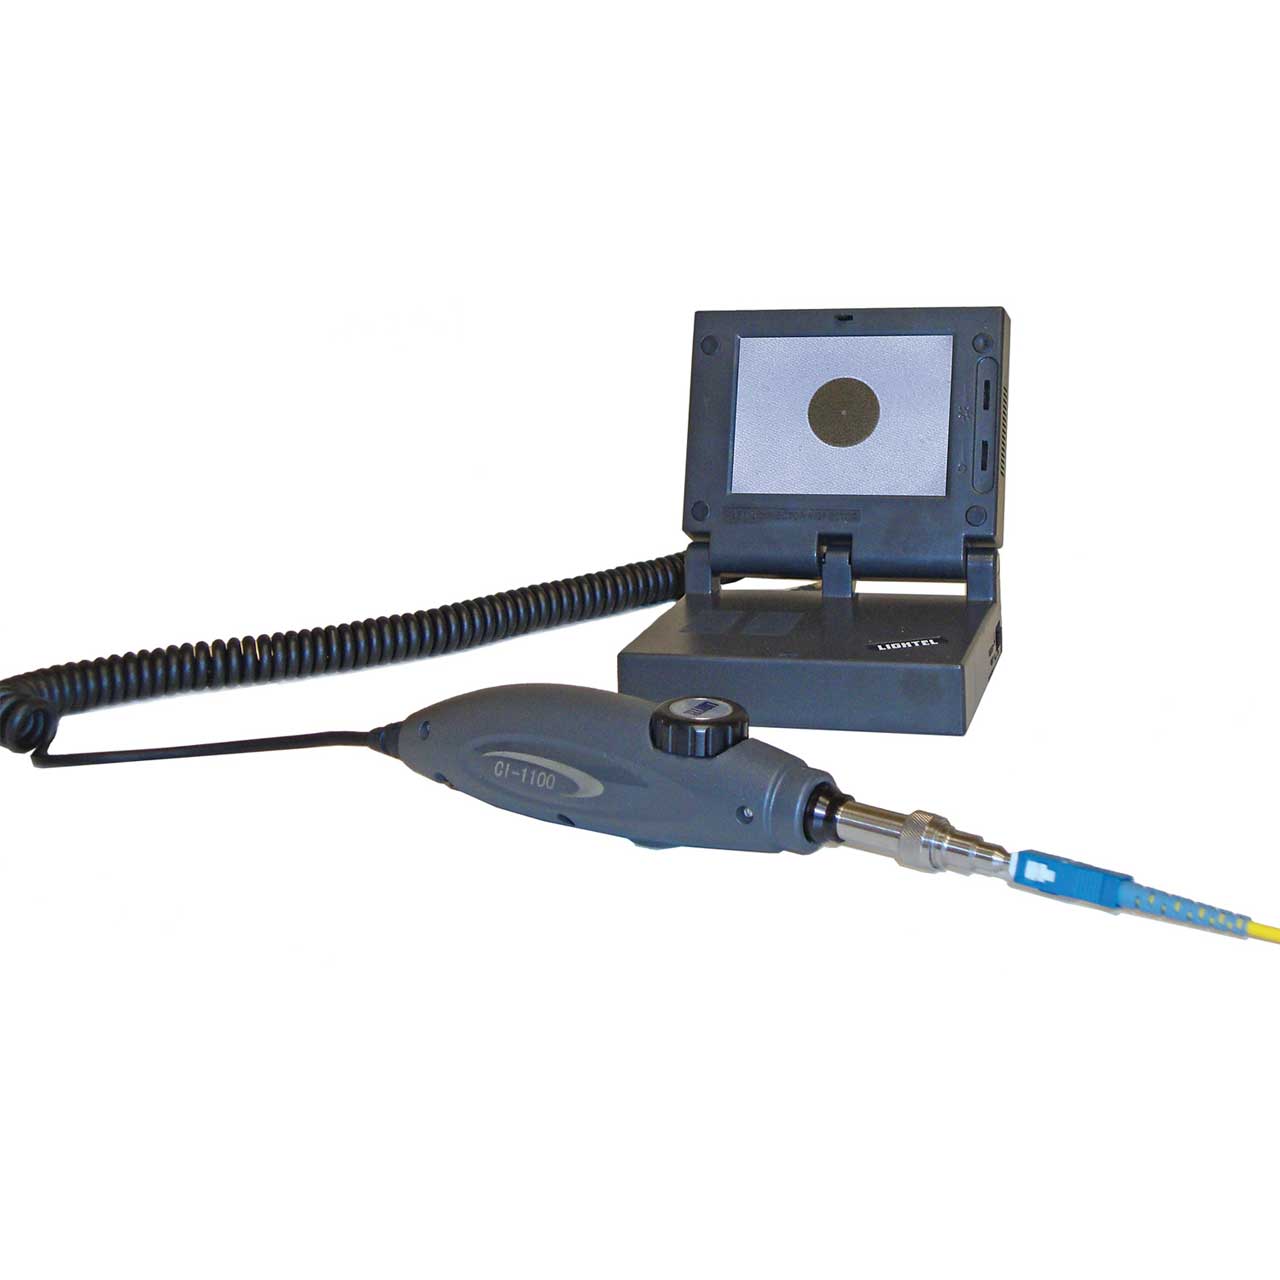 Lightel CI-1100-A2 Fiber Optic Connector Inspector